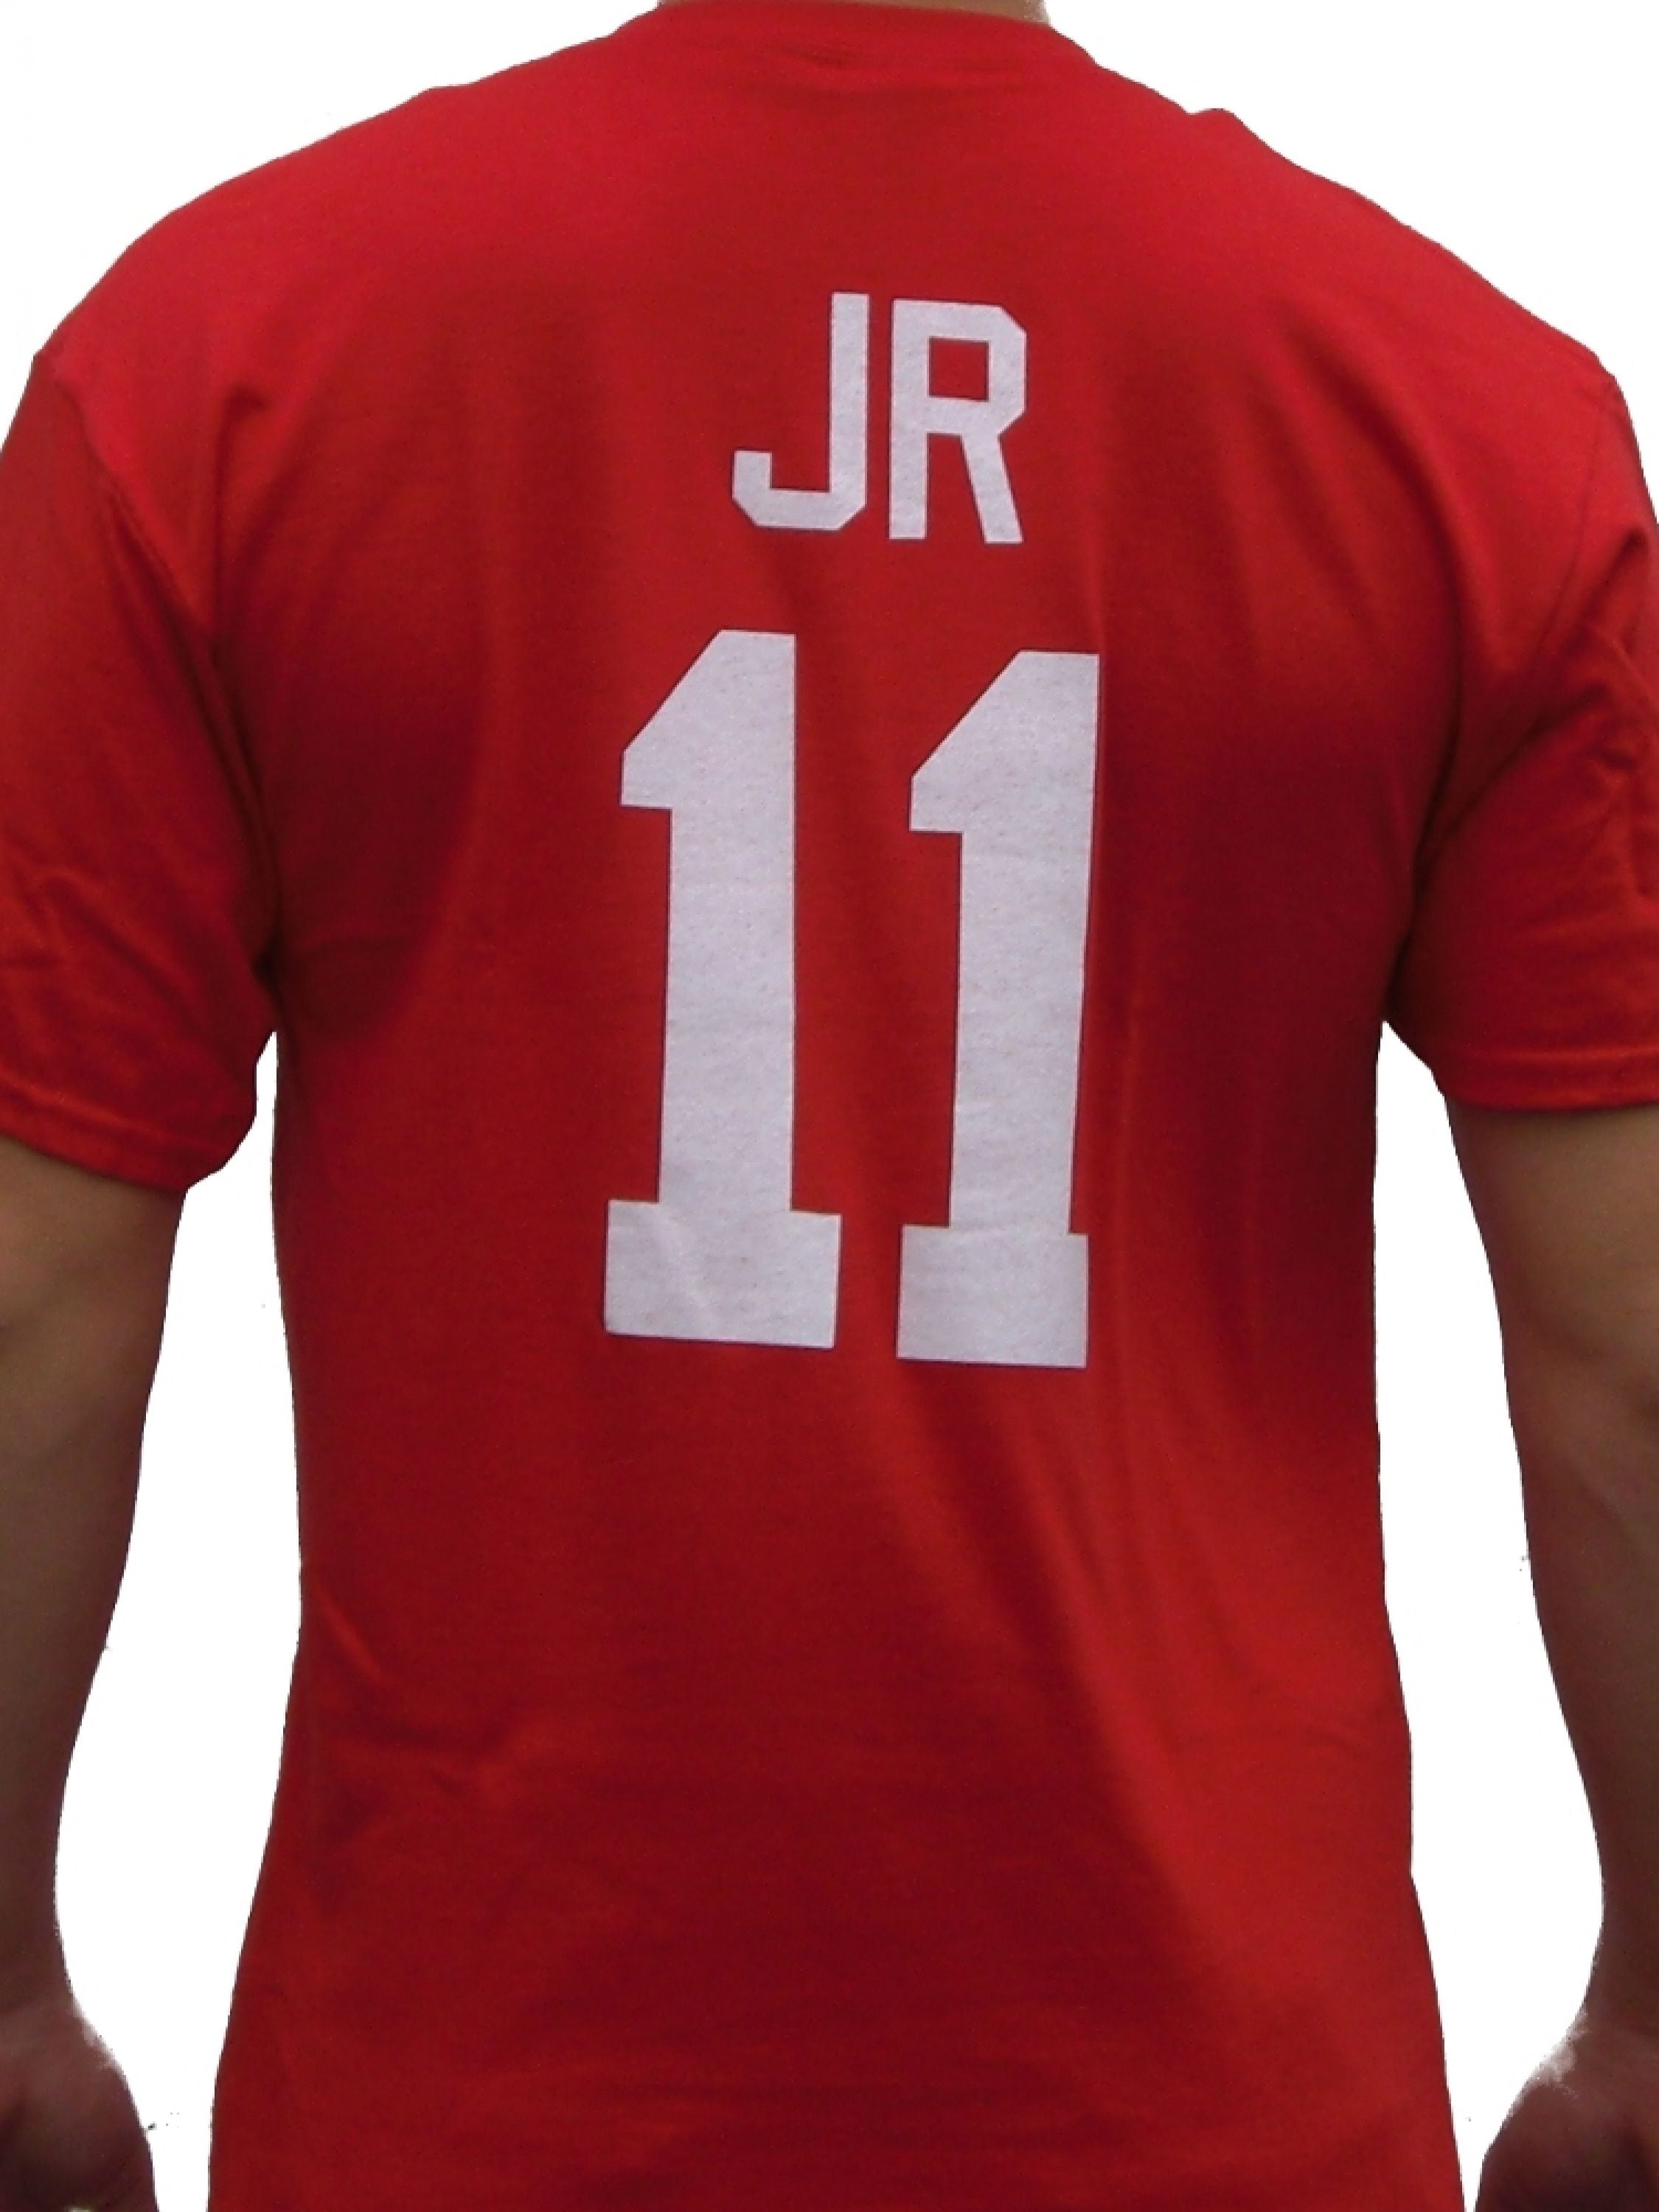 Junior JR Floyd #11 Little Giants Jersey T-Shirt Costume Uniform